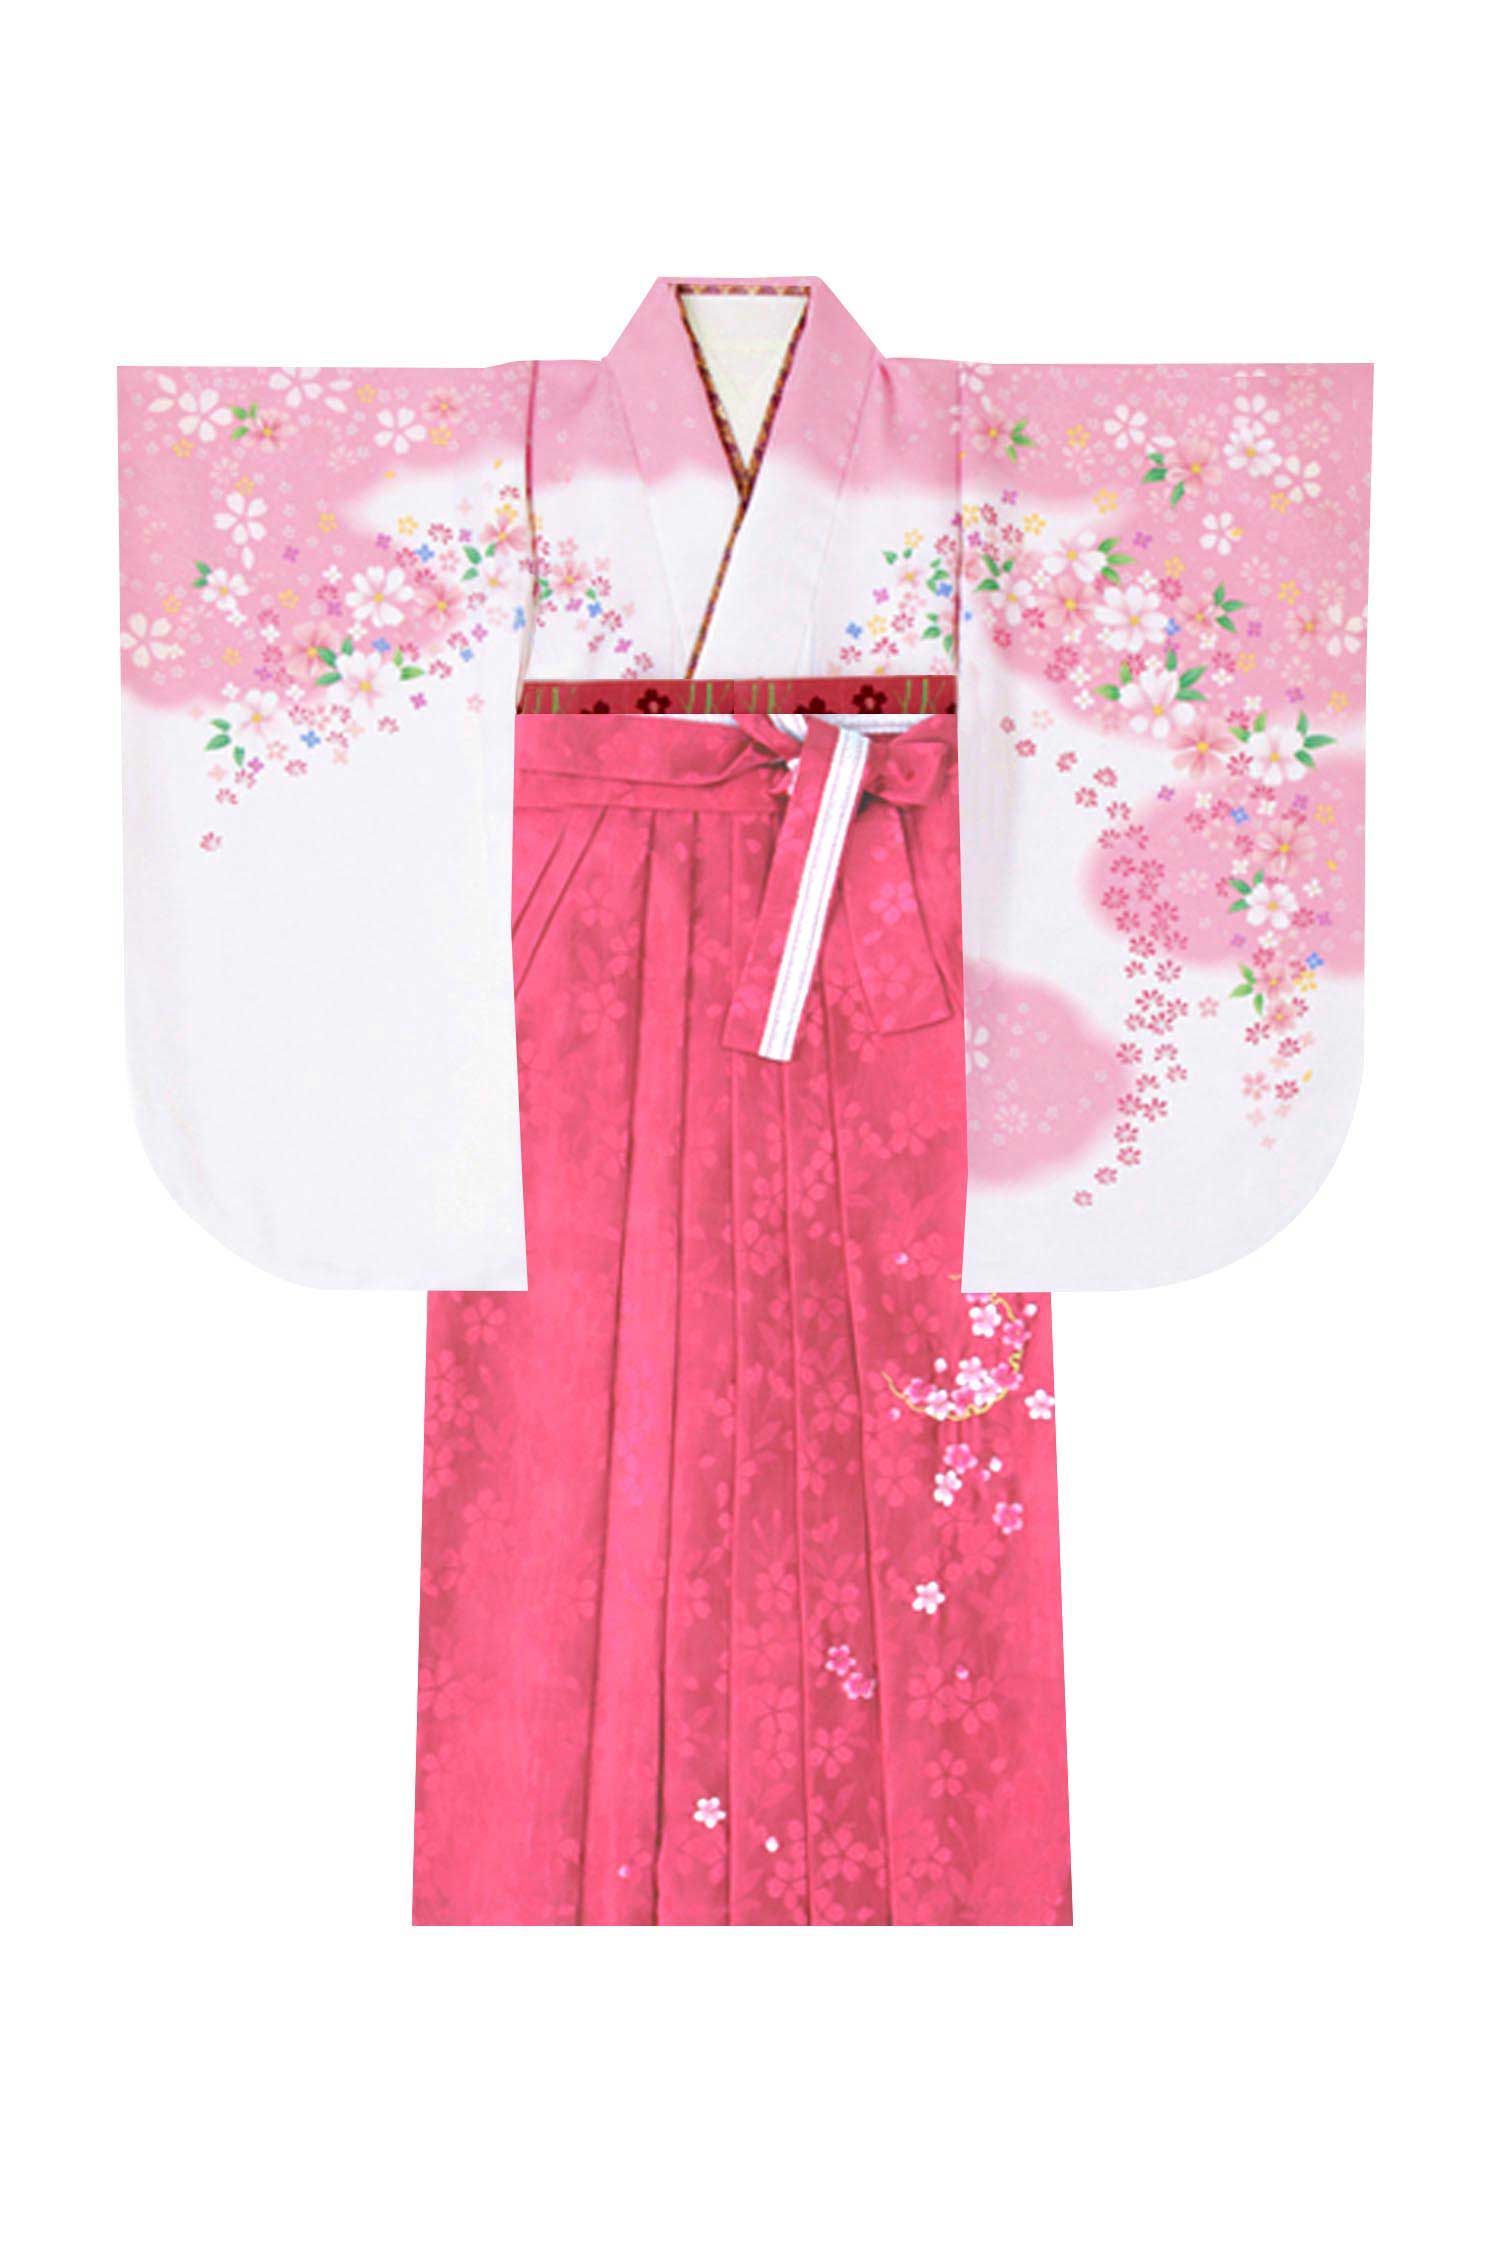 レンタル袴&着物 「白ピンク 小花ちらし」&「ピンク 花地紋」 | 小振袖